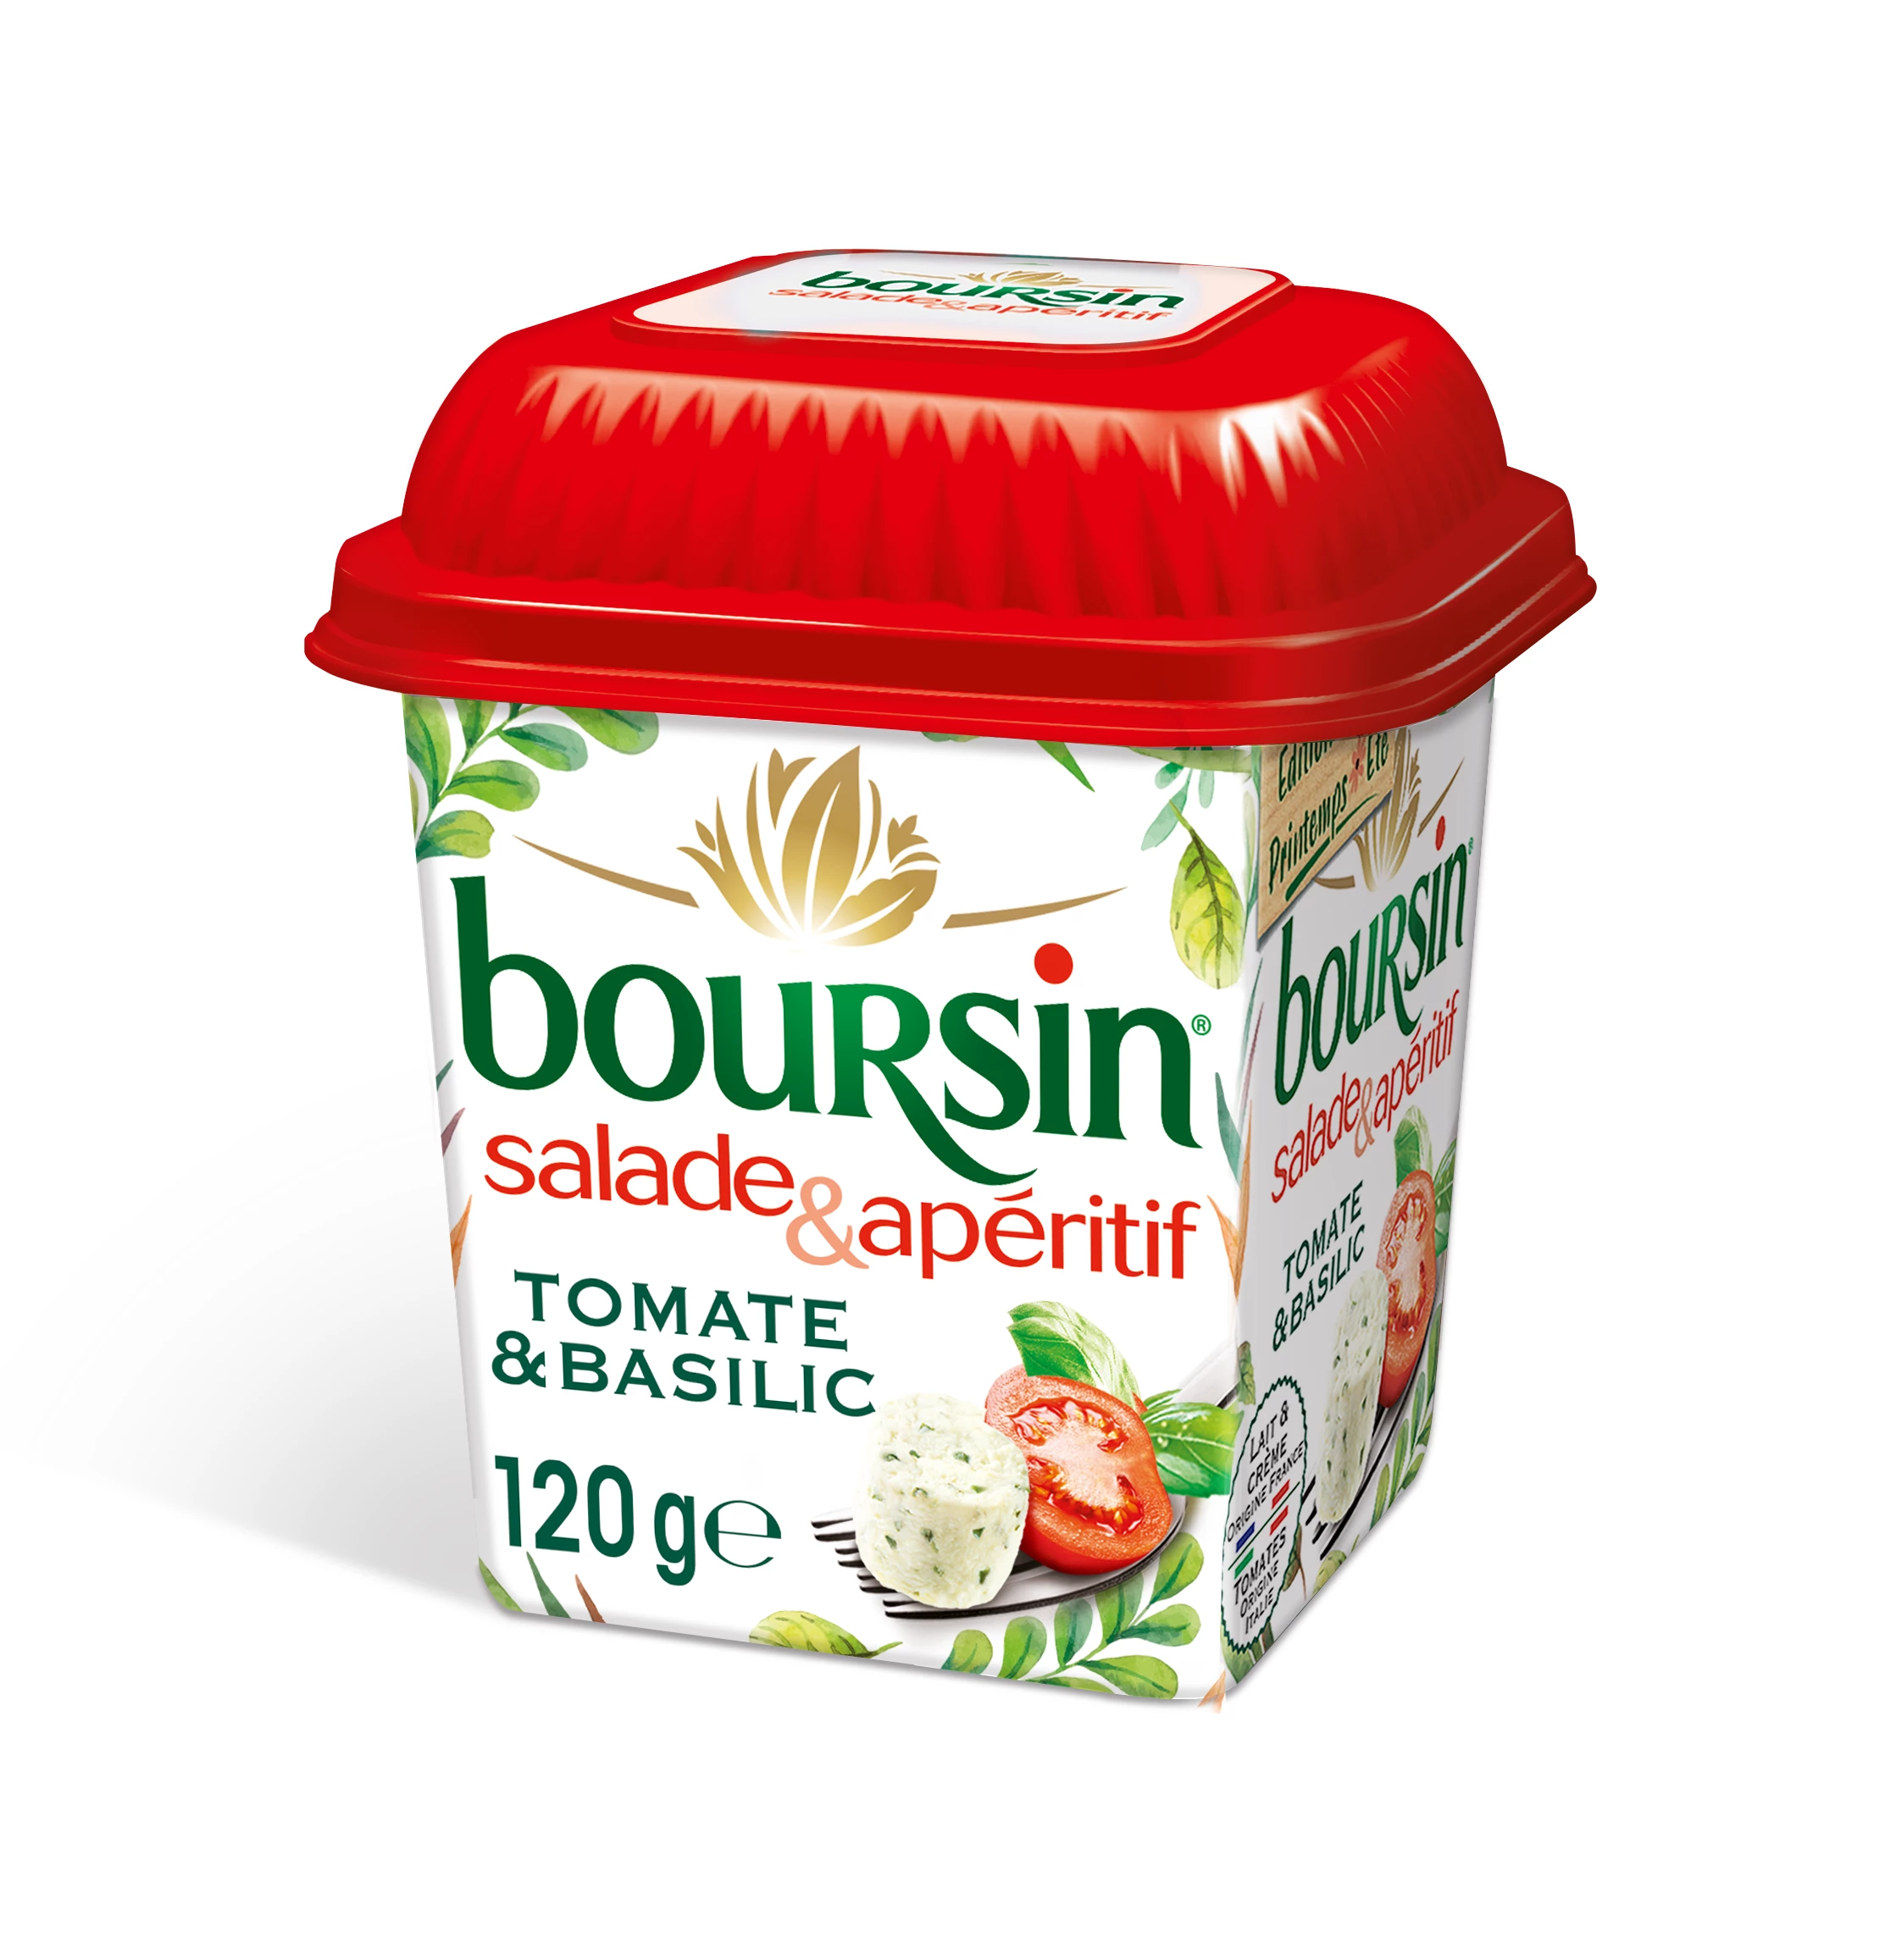 Salade Boursin Basilicum & Zout 12